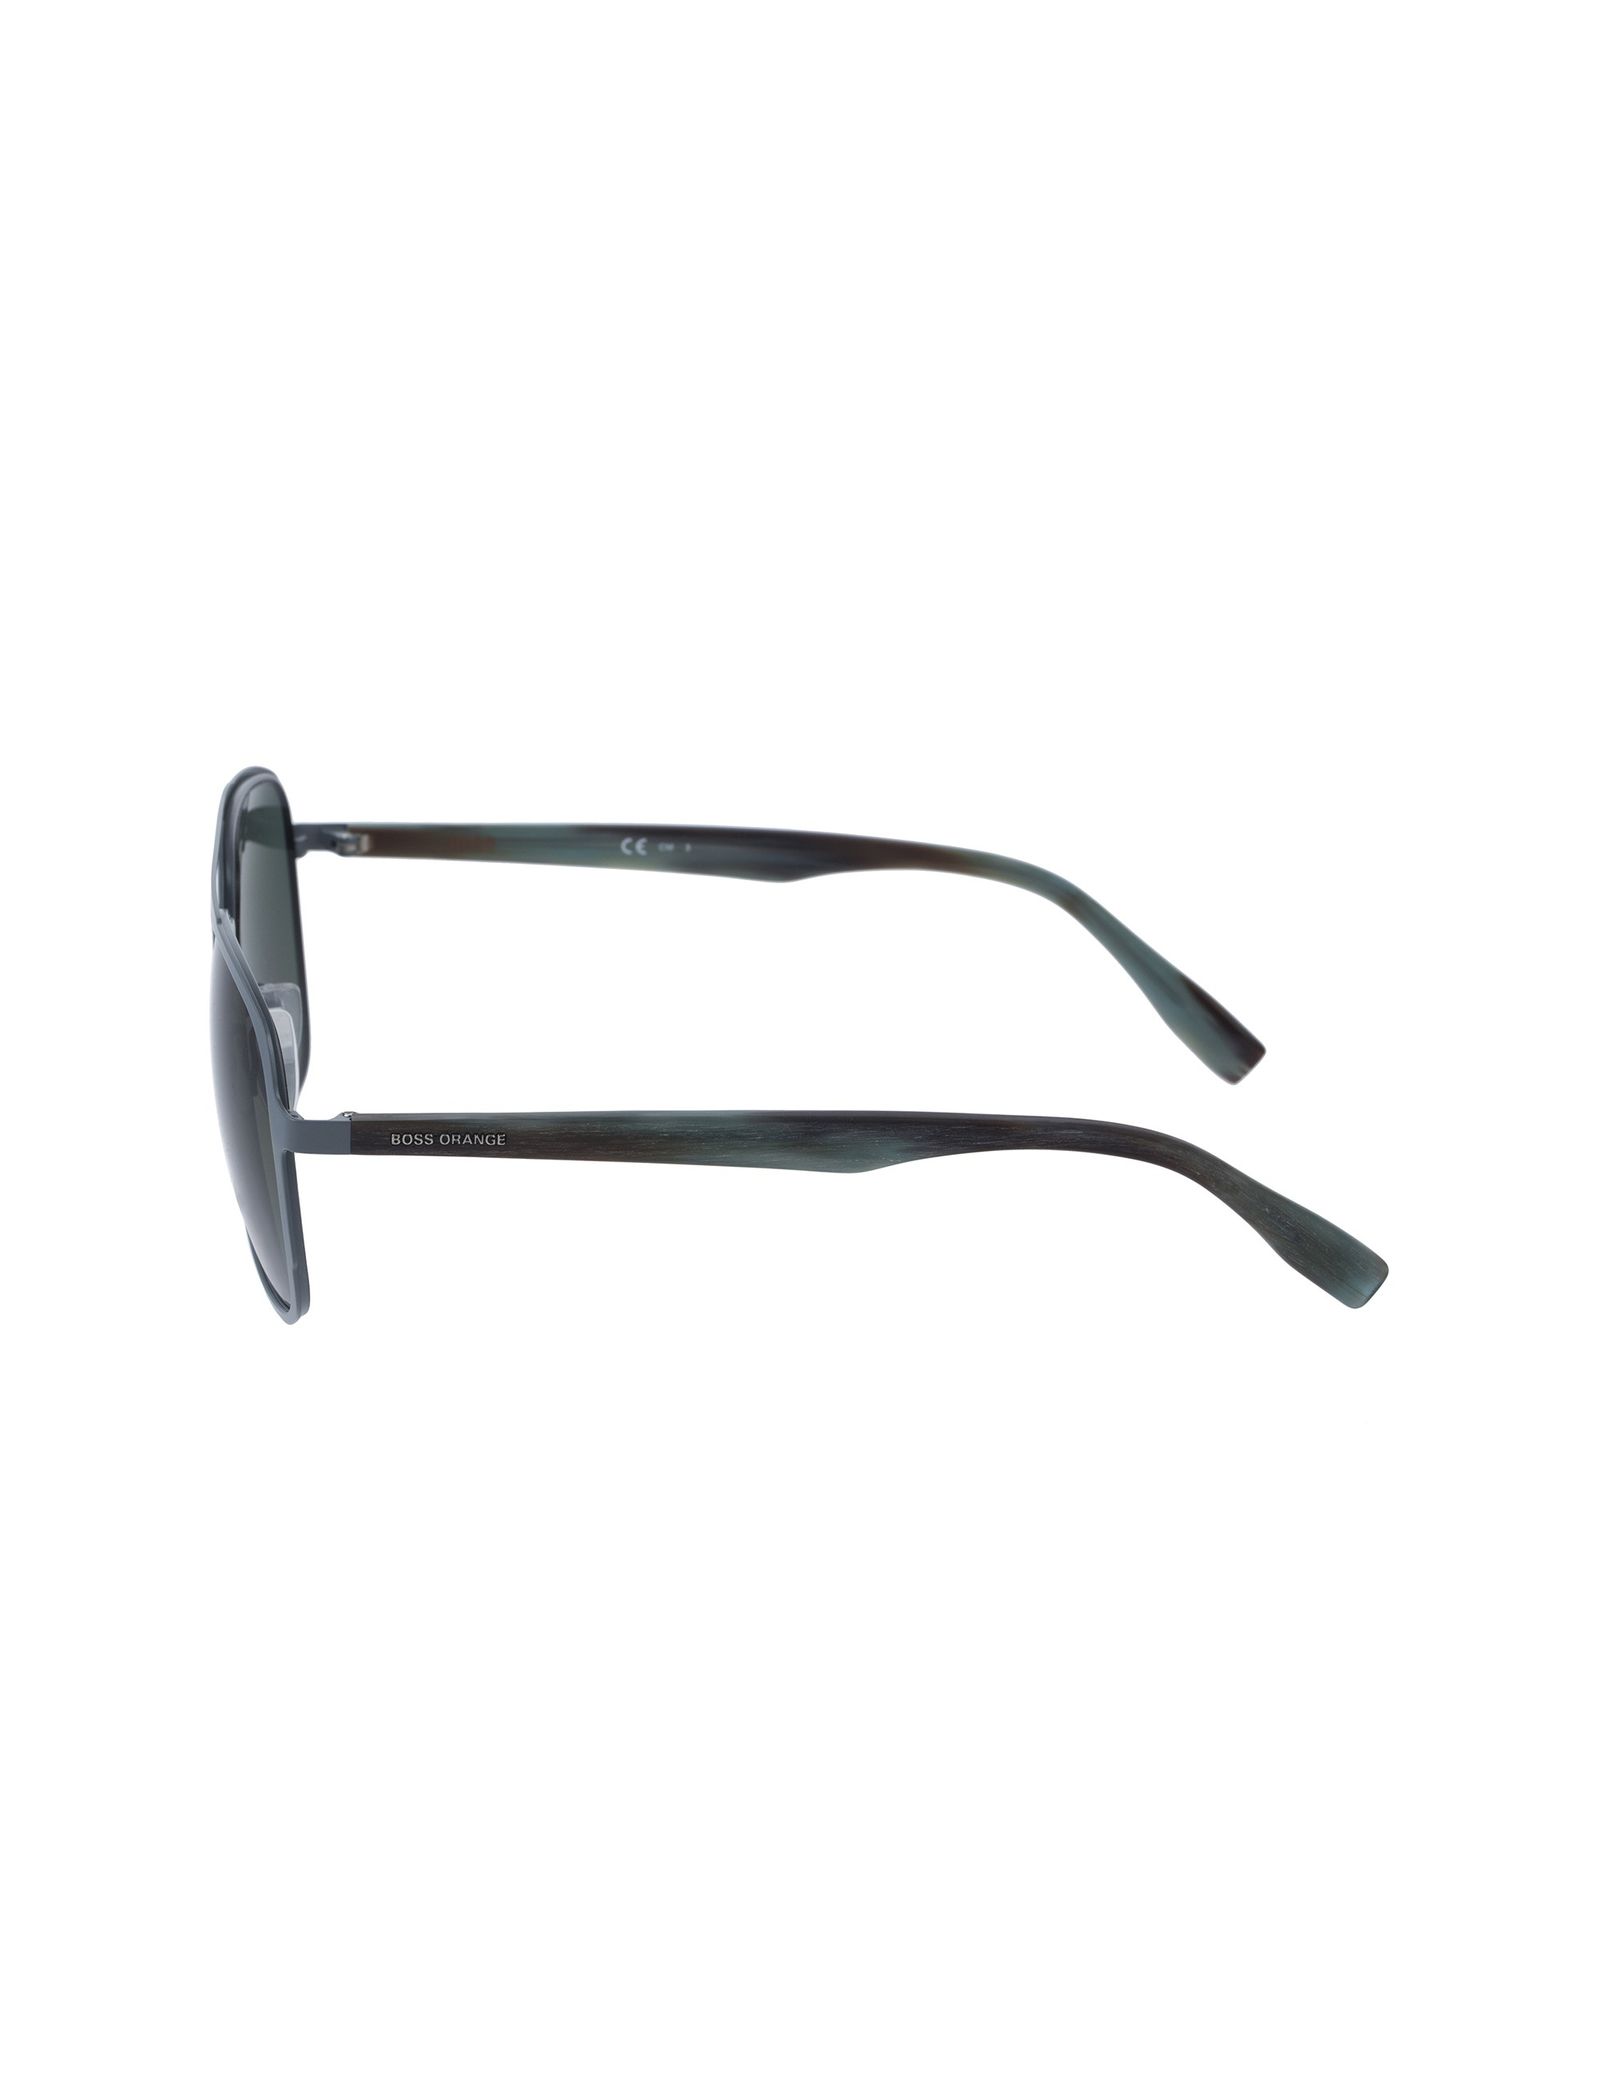 عینک آفتابی خلبانی مردانه - باس اورنج - سبز - 3